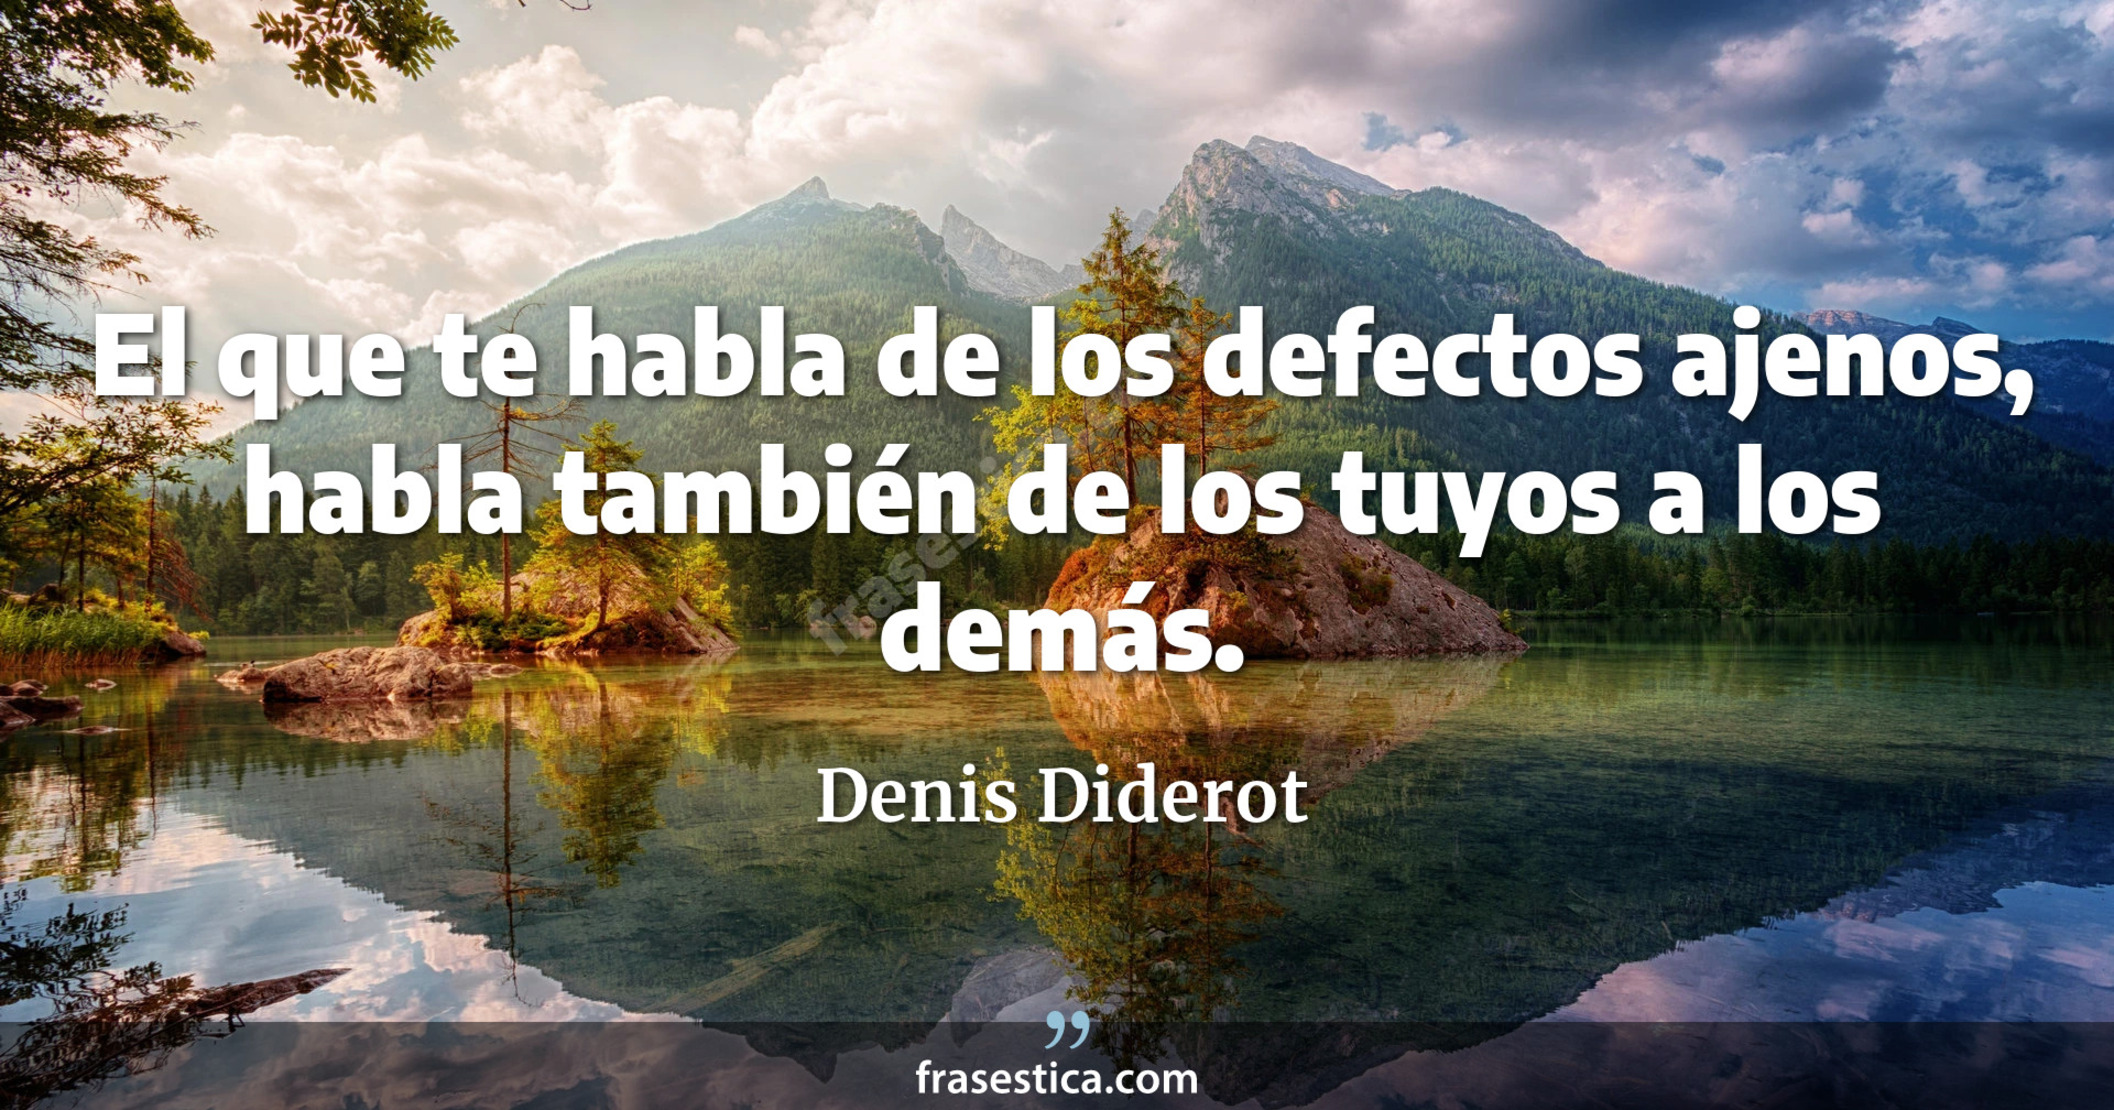 El que te habla de los defectos ajenos, habla también de los tuyos a los demás. - Denis Diderot